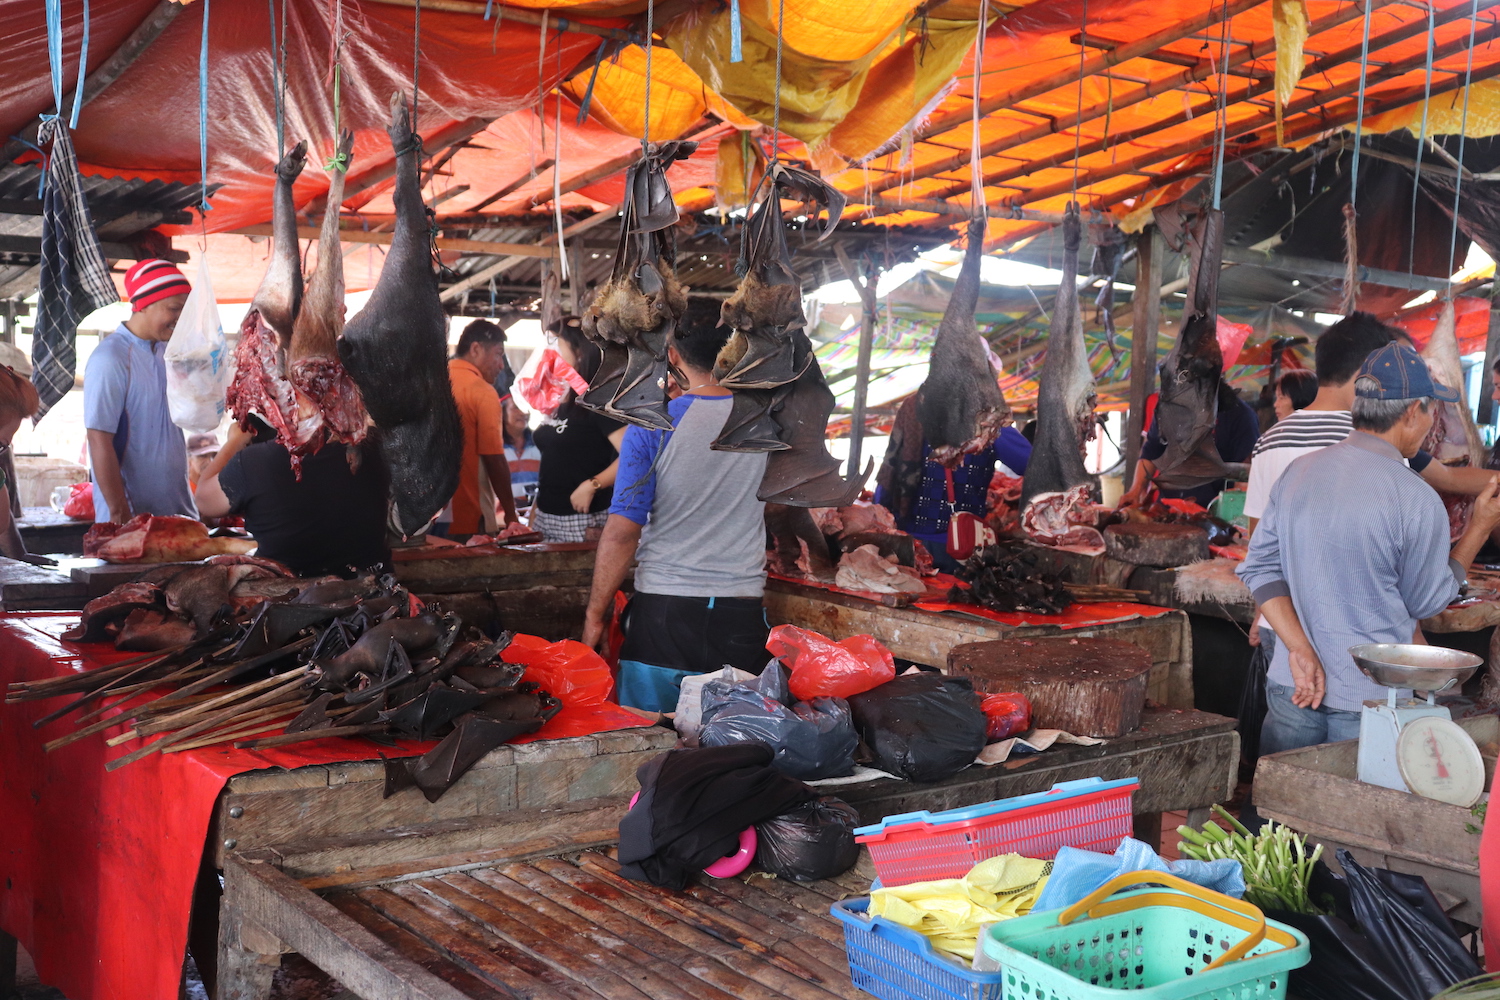 Bats in wildlife market in Indonesia